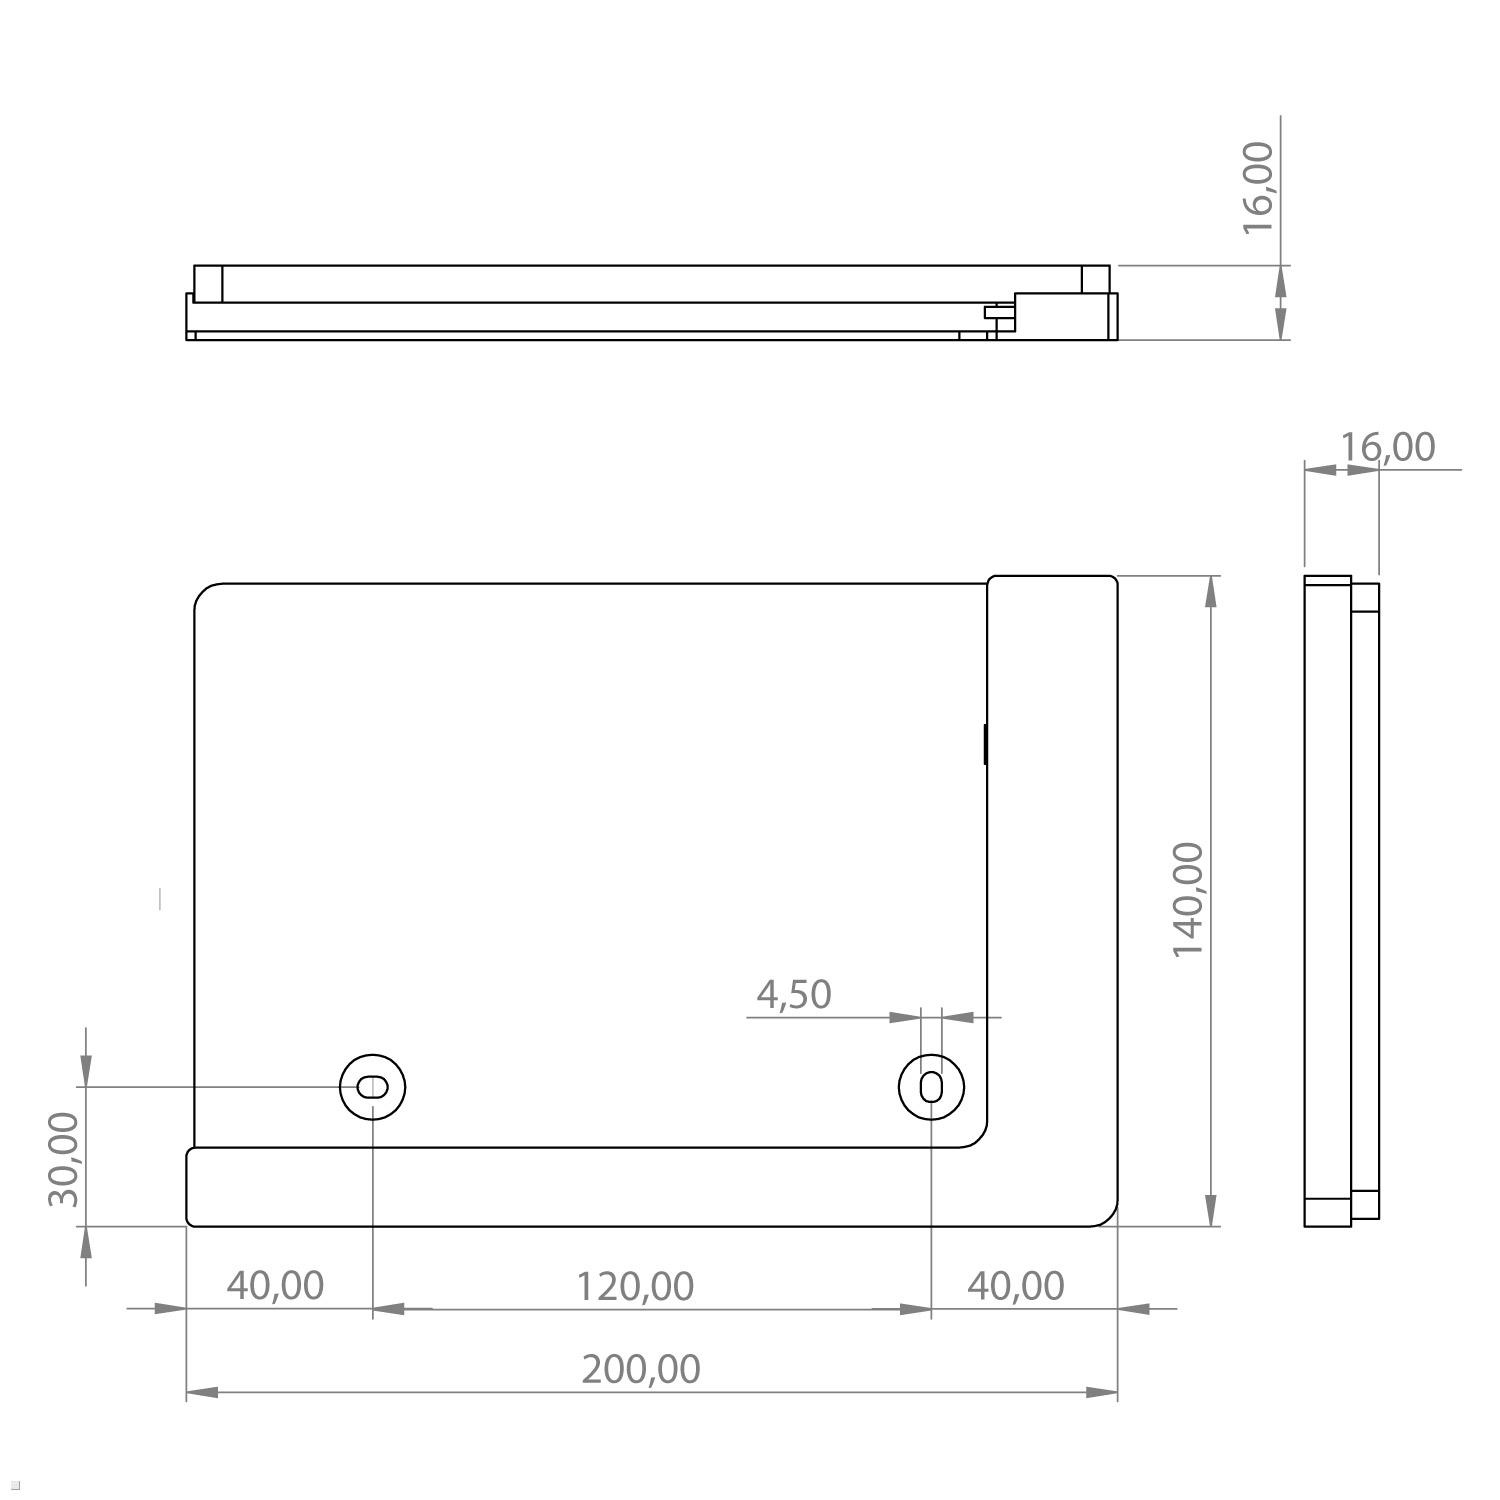 TABLINES TWP Tablethalter mit 12.4 Samsung S7+ silber Tablet Ladefunktion Wandhalterung, für Tab